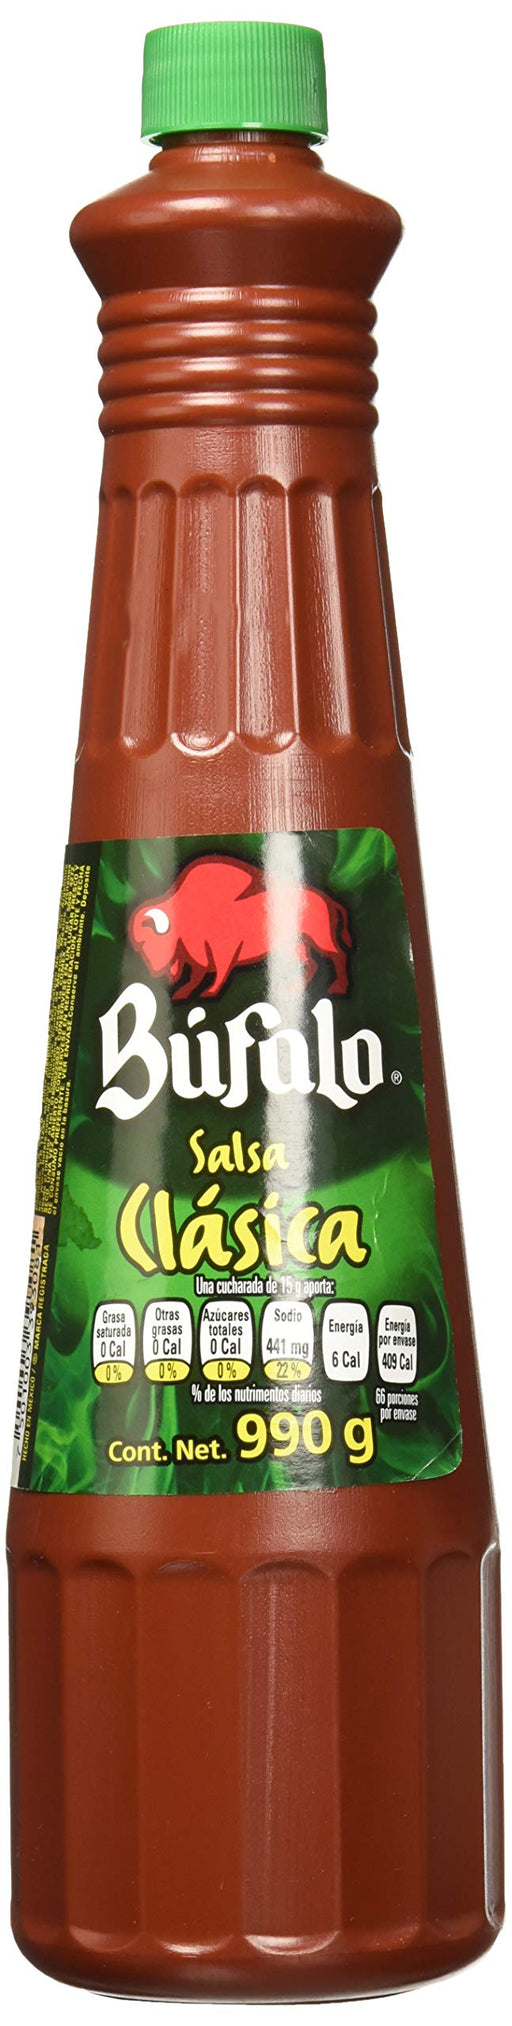 Bufalo, Salsa Bufalo Clasica, 990 gramos - Nativo